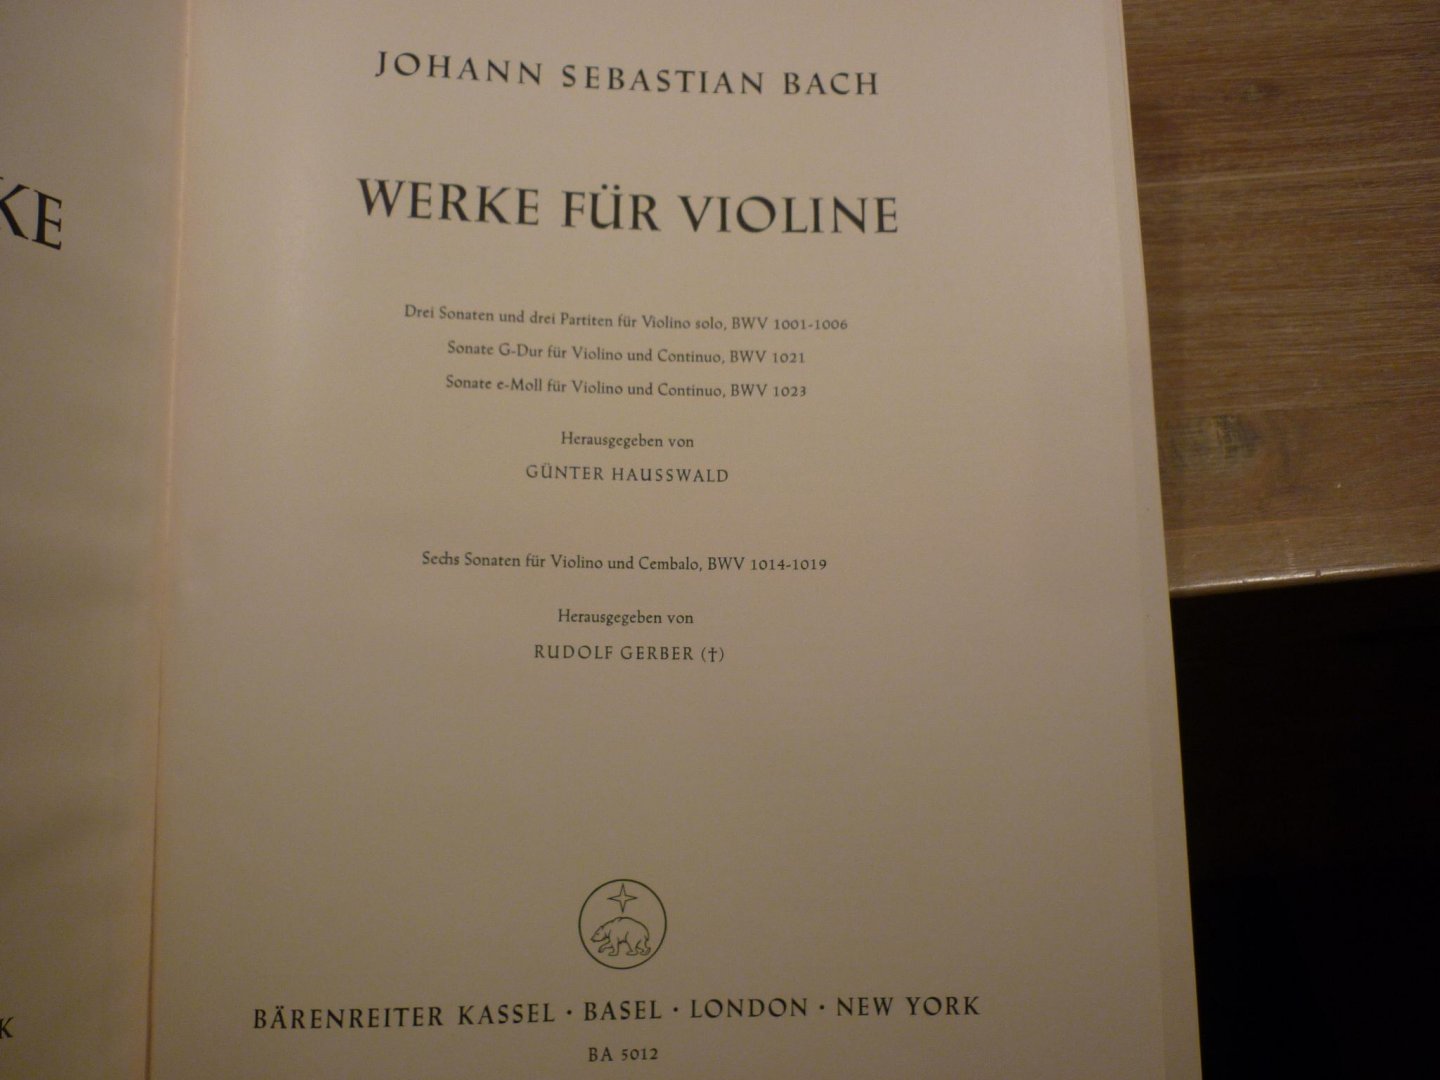 Bach; J. S. (1685-1750) - Werke für Violine; Kammermusikwerke, Band 1; Neue Ausgabe sämtlicher Werke